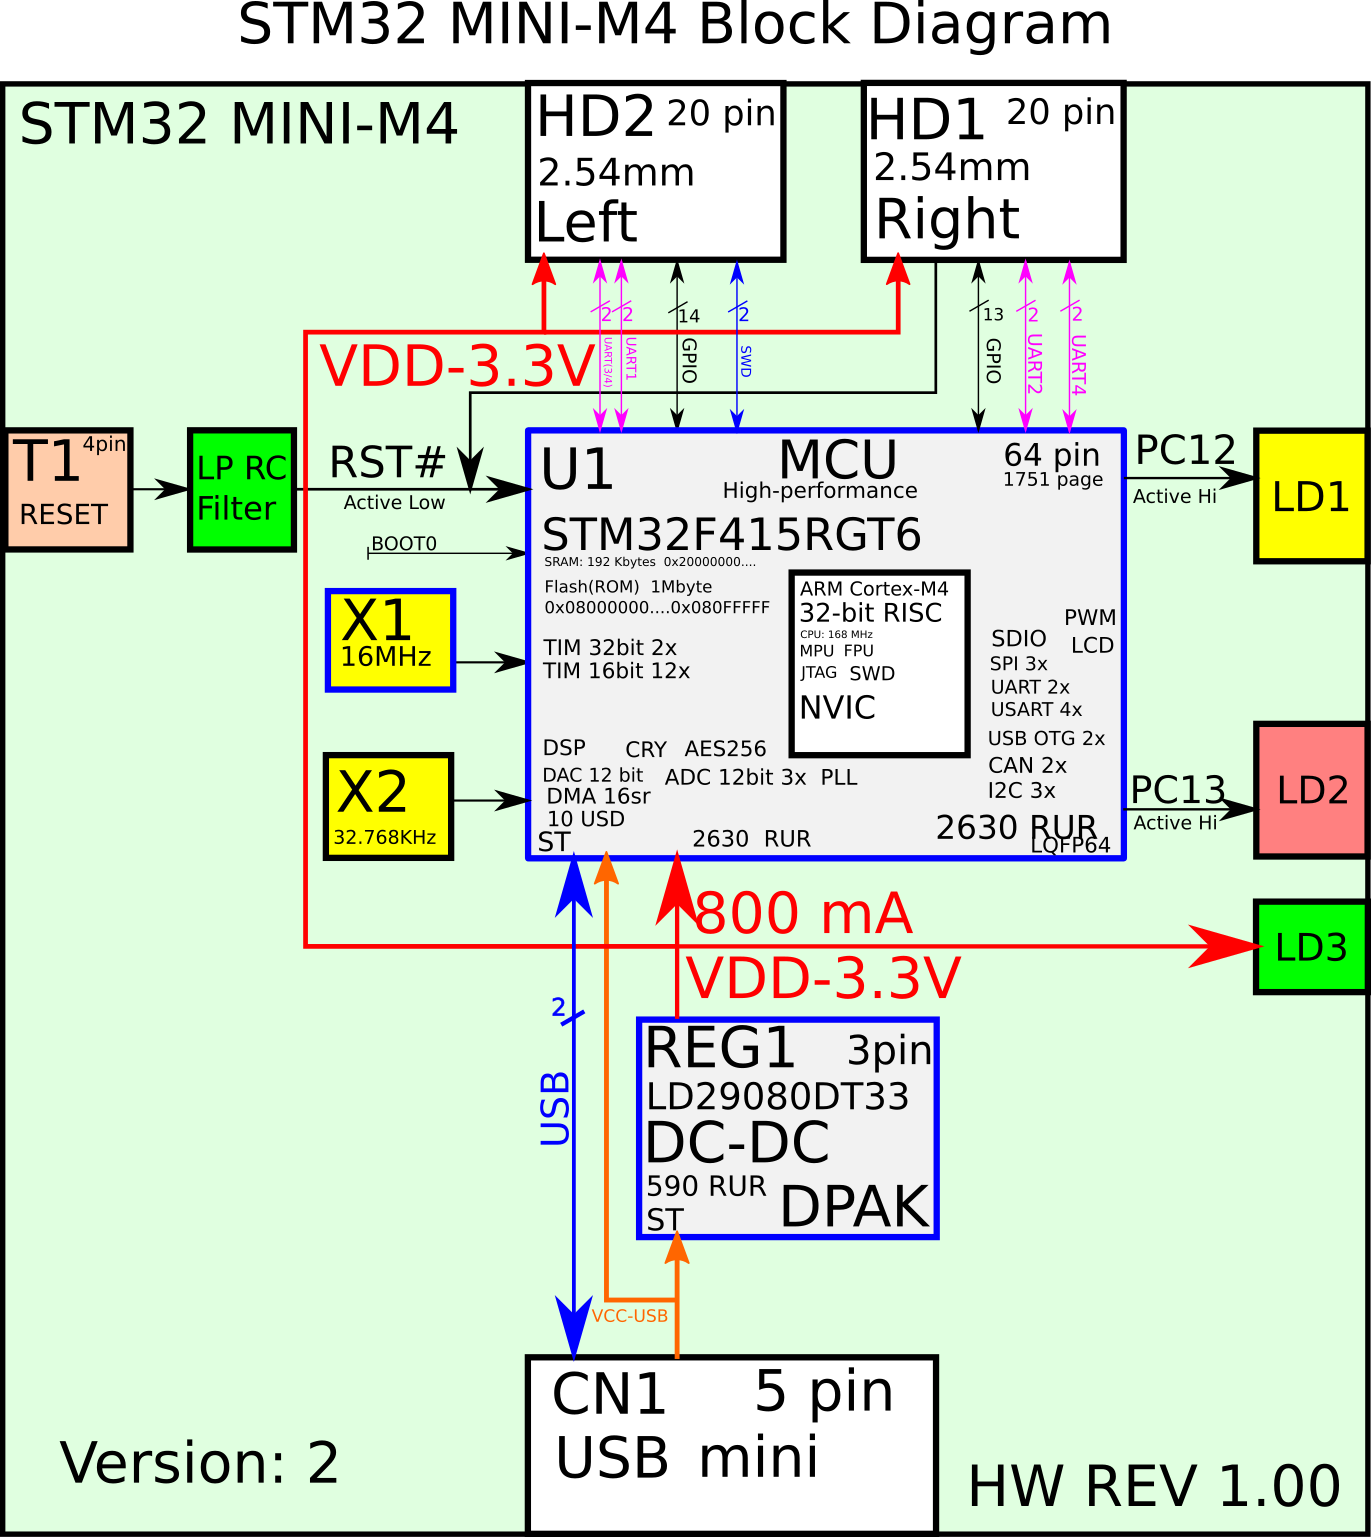 STM32 MINI-M4